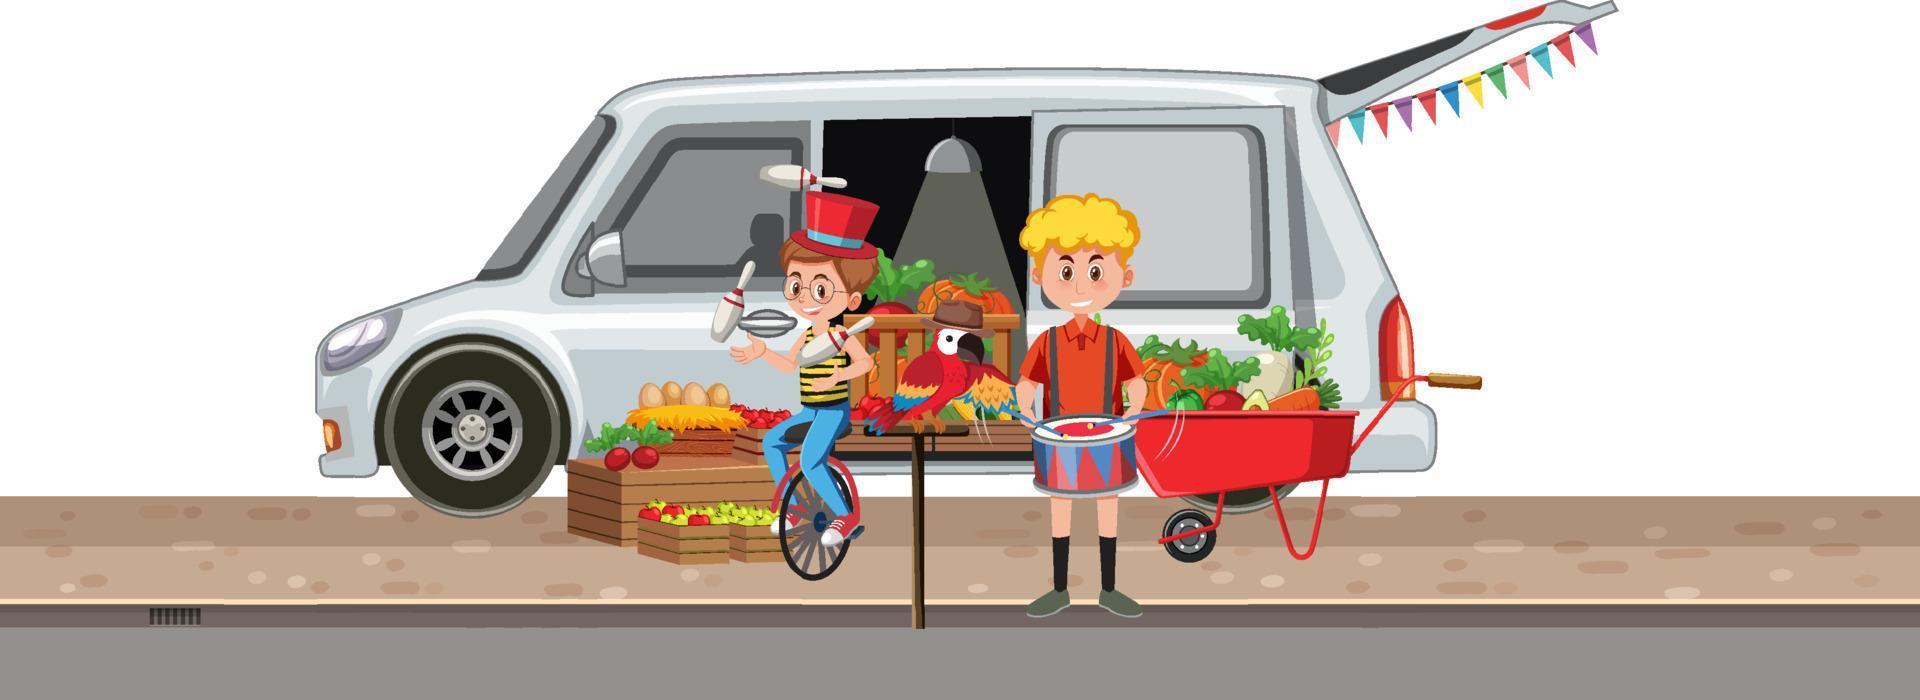 scena con ragazzi e furgone delle verdure vettore